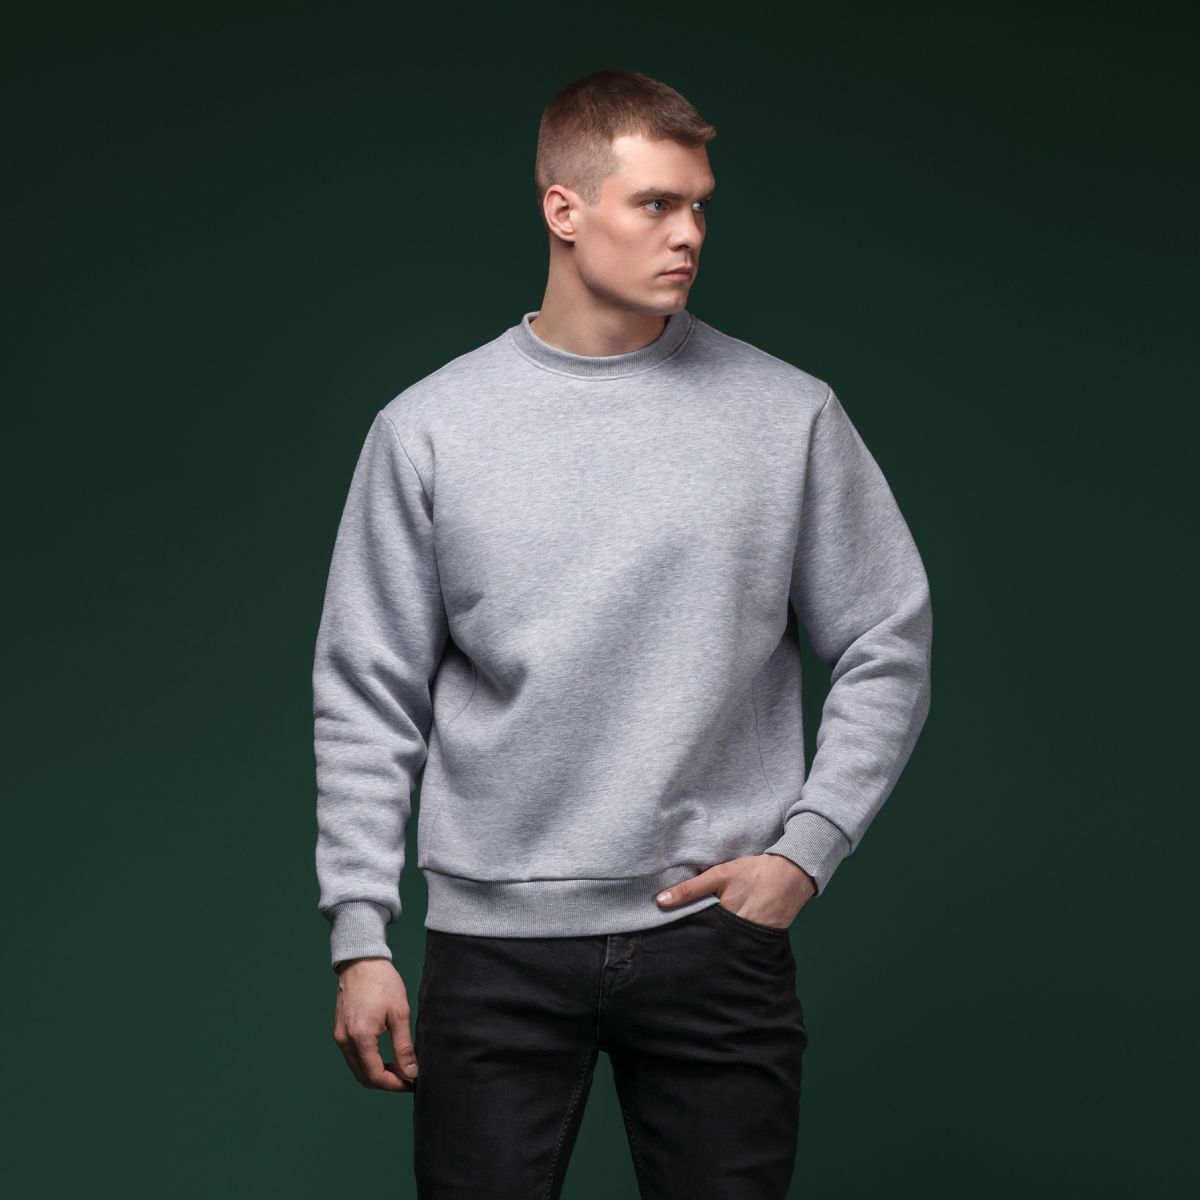 Світшот Base Soft Sweatshirt. Вільний стиль. Колір Сірий/Gray. Розмір M 5